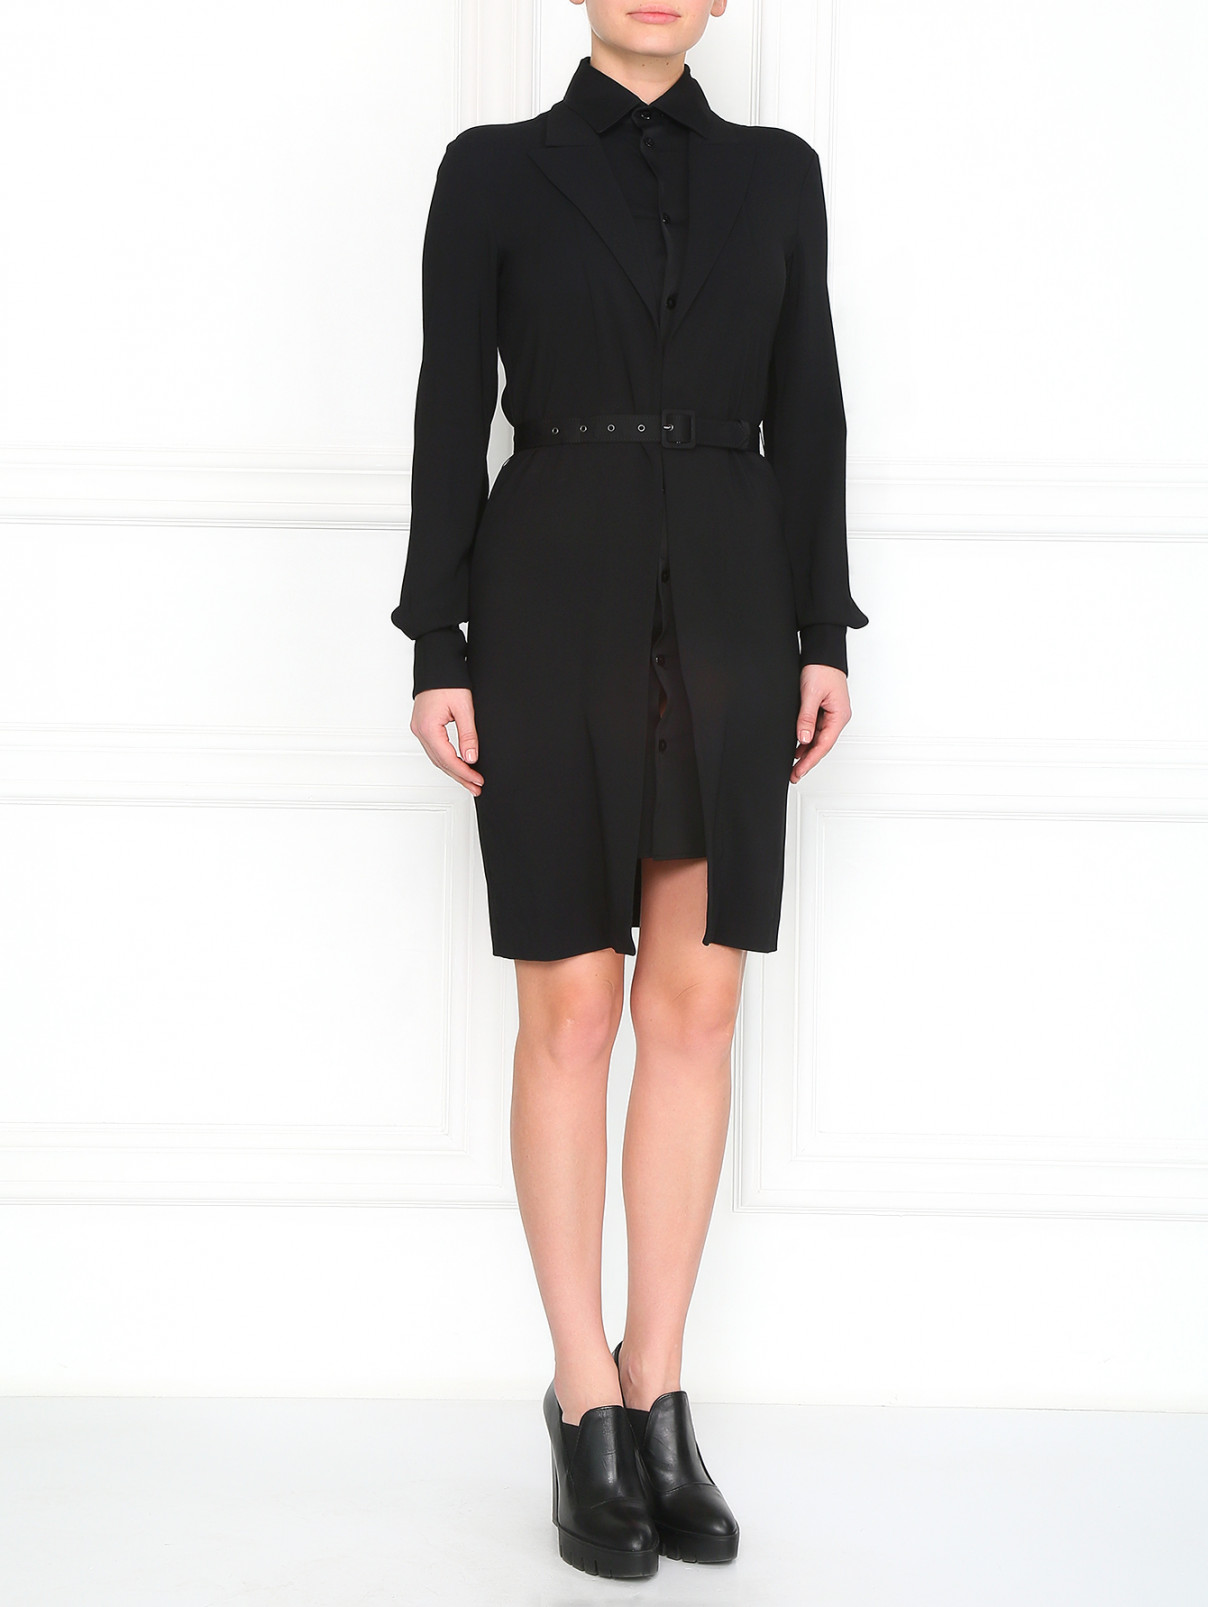 Платье на пуговицах с ремнем Jean Paul Gaultier  –  Модель Общий вид  – Цвет:  Черный